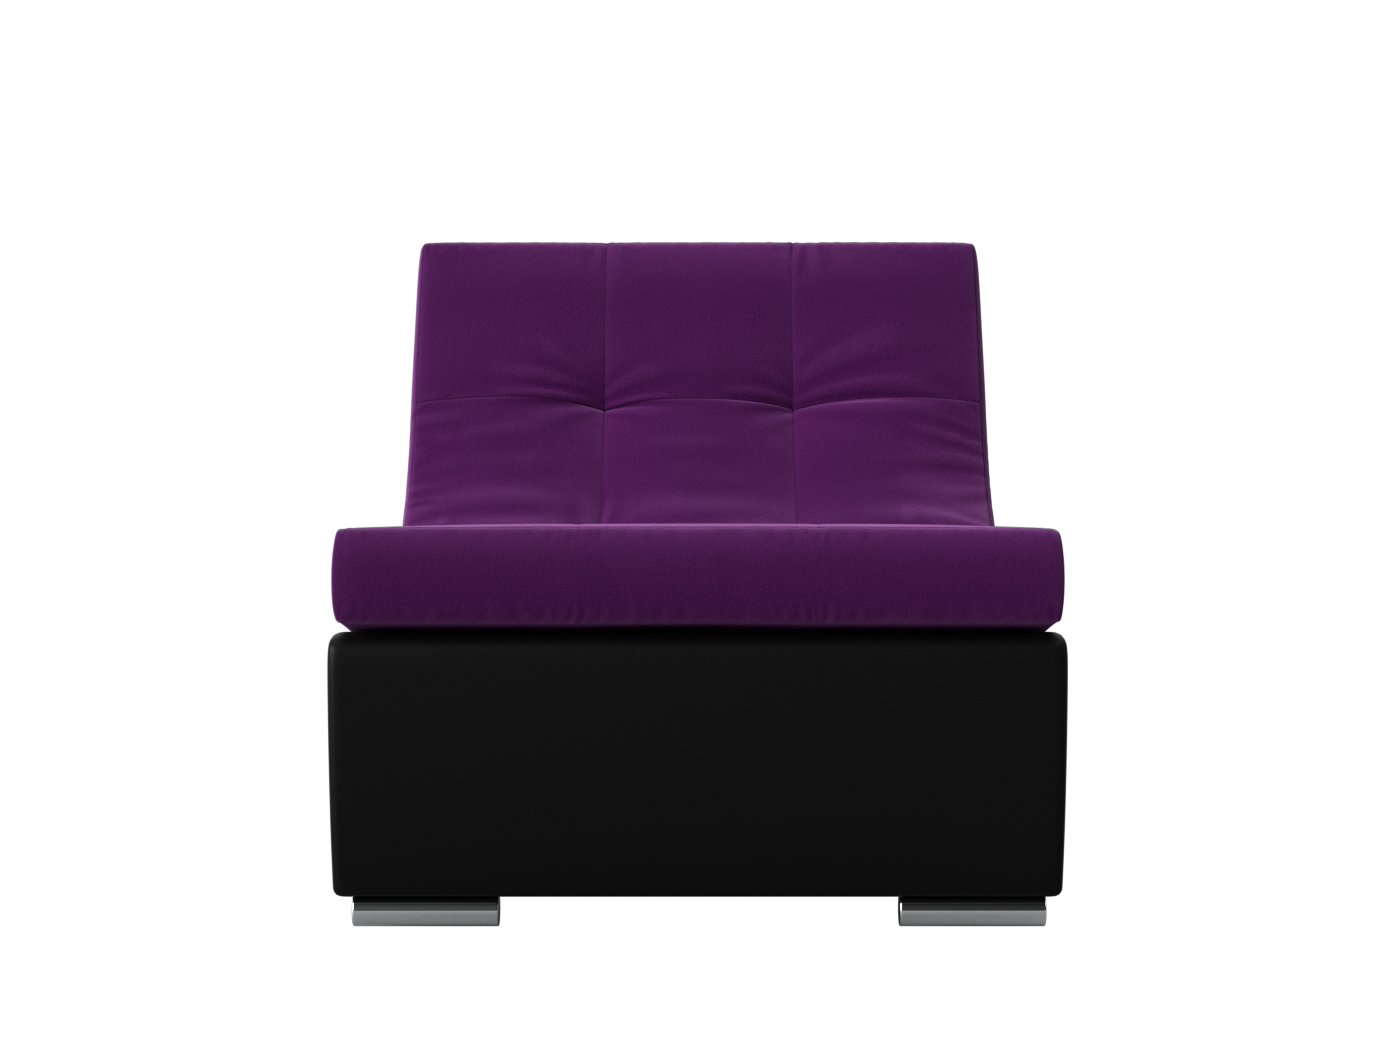 Модуль Кресло для модульного дивана Монреаль MebelVia Фиолетовый, Черный, Микровельвет, Экокожа, ЛДСП модуль кресло для модульного дивана холидей mebelvia фиолетовый микровельвет лдсп